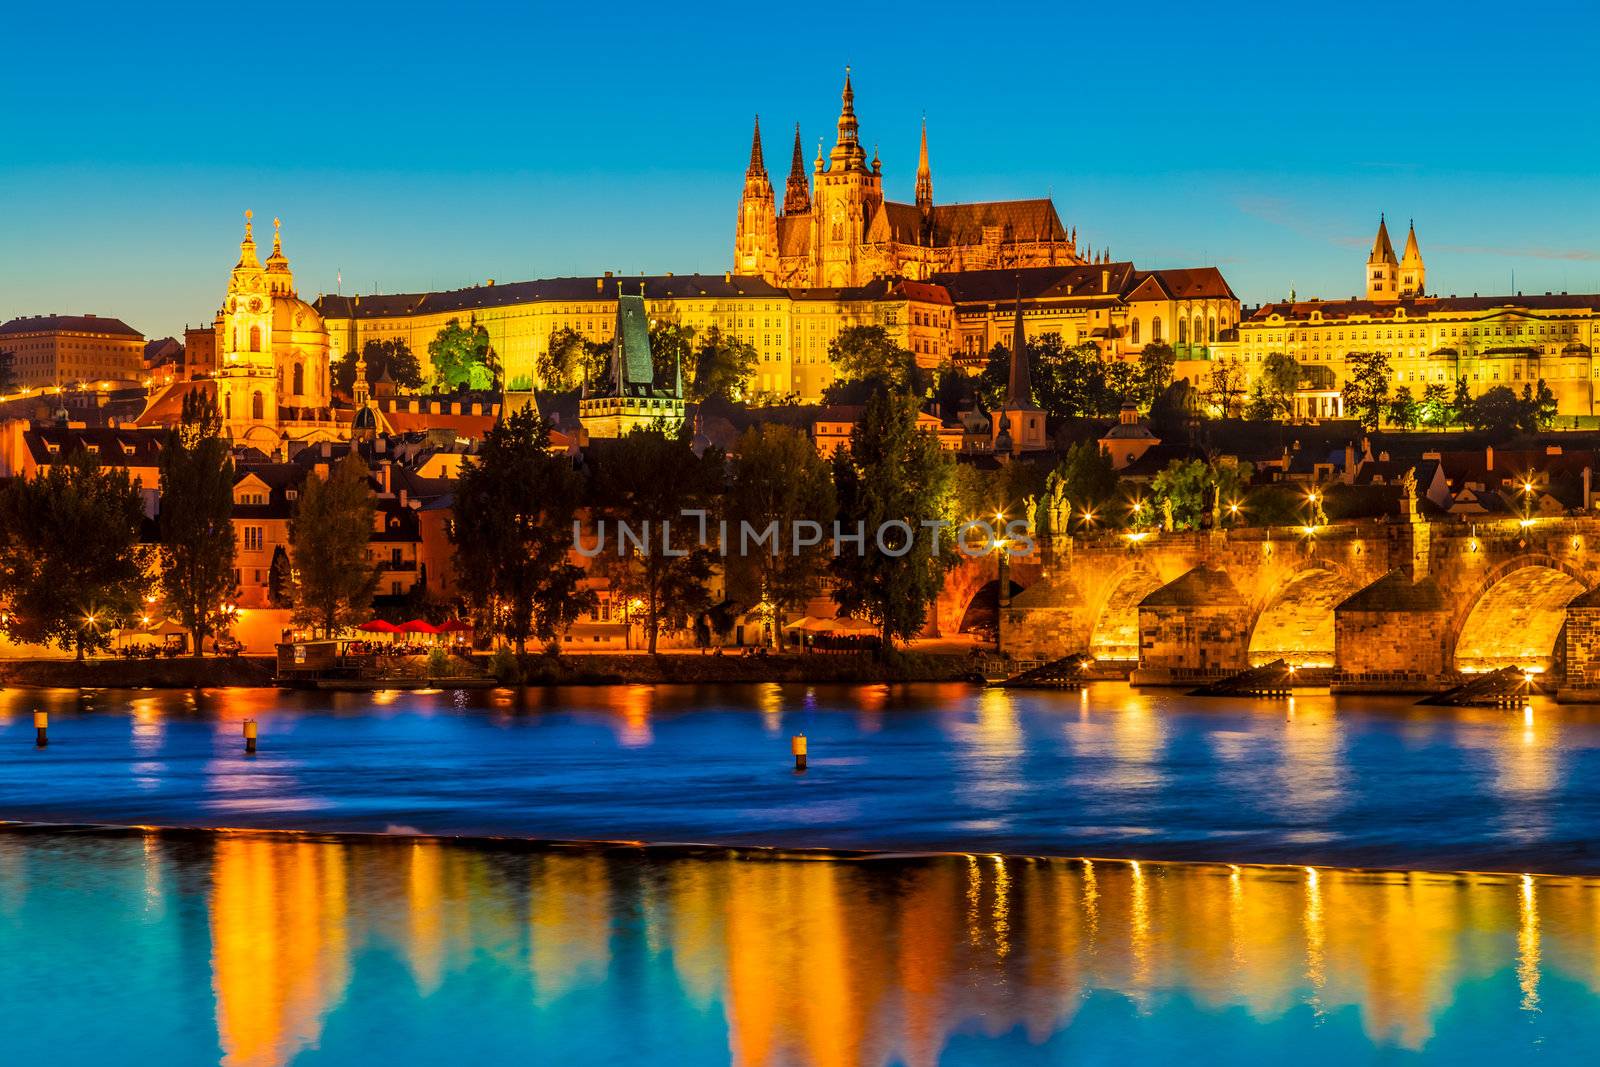 The Czech Capital Prague is often called "the Golden City".